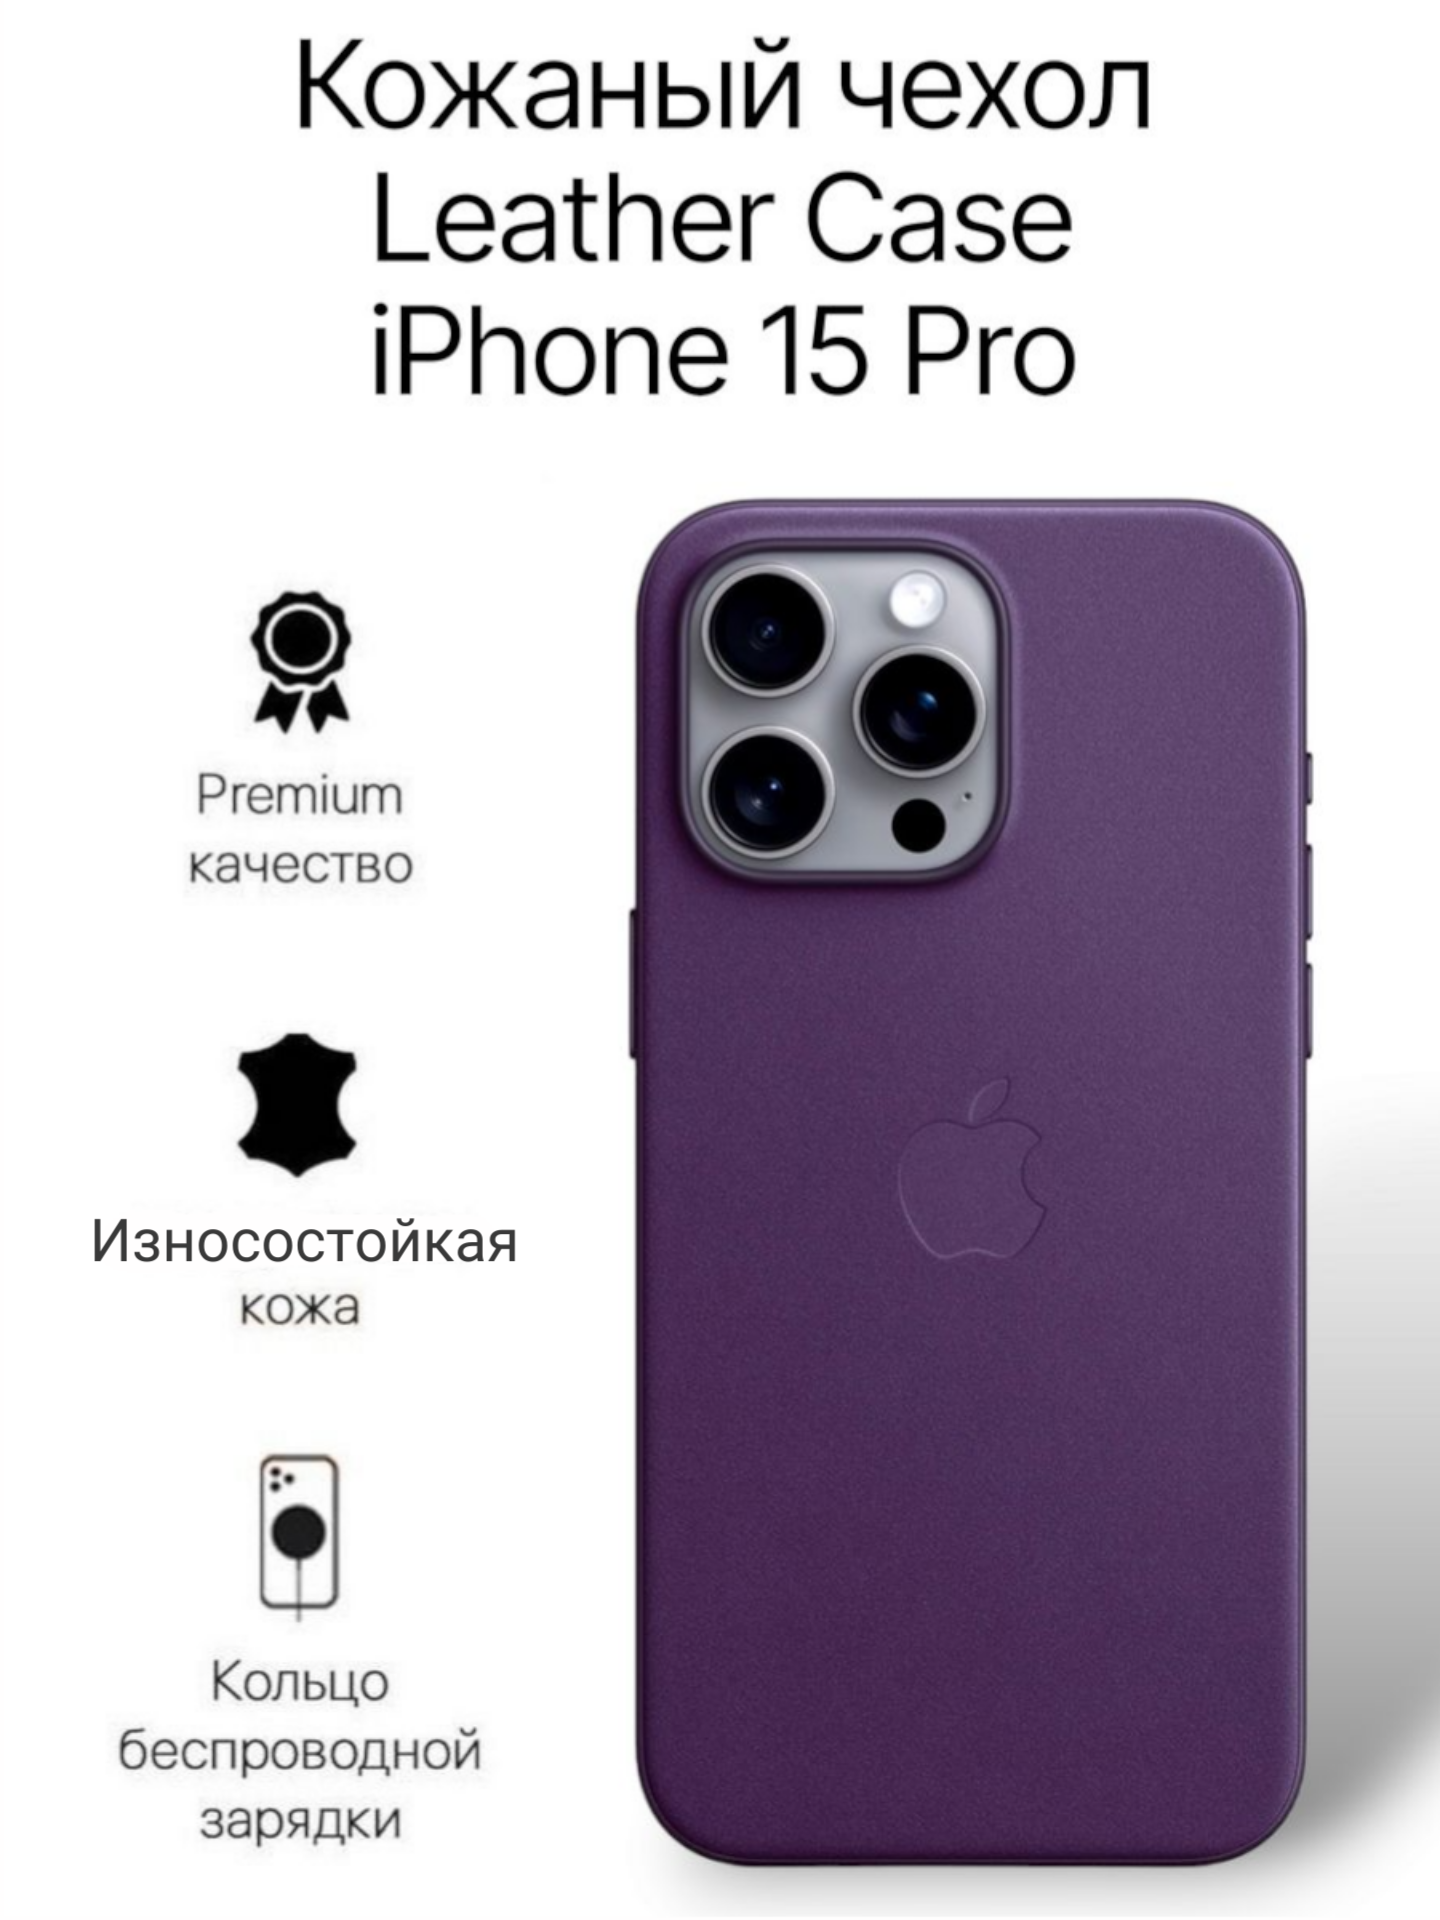 Кожаный чехол на iPhone 15 Pro с функцией MagSafe, темно фиолетовый - Dark Cherry